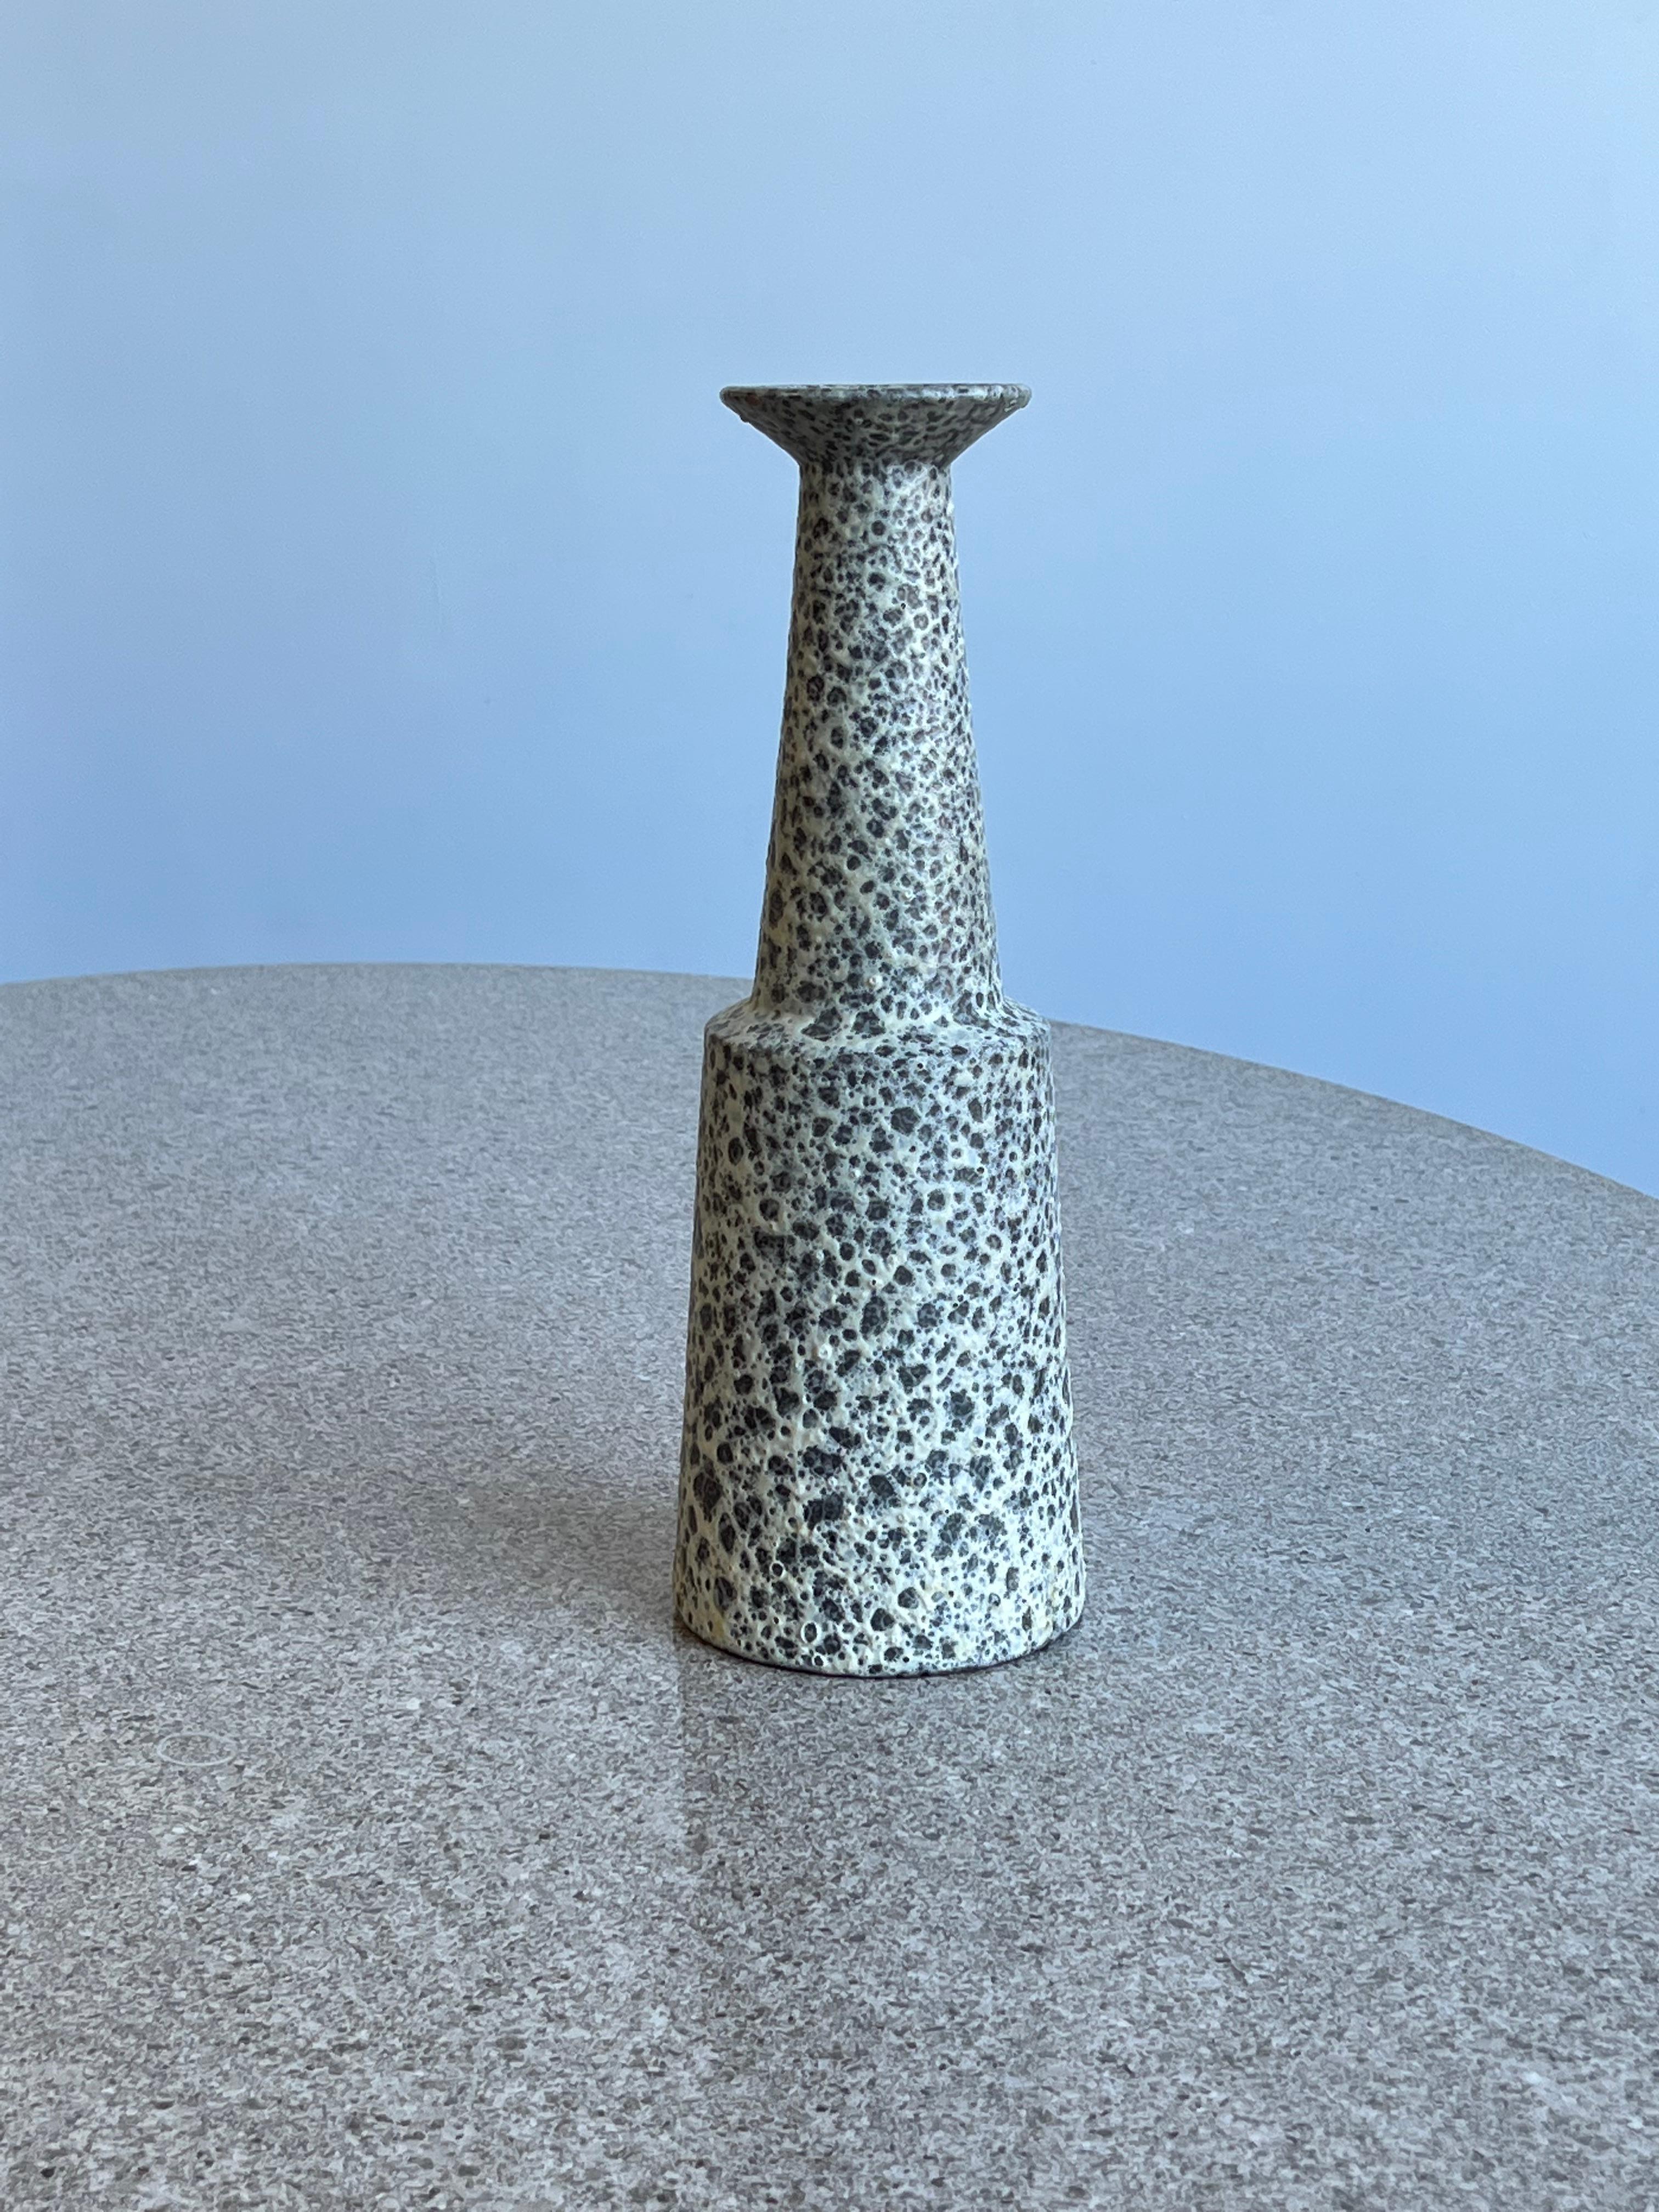 Schwarz-weiße italienische Vase von Bitossi aus den 1960er Jahren. Die Art Lava-Technik erzeugt eine wunderschöne Textur.